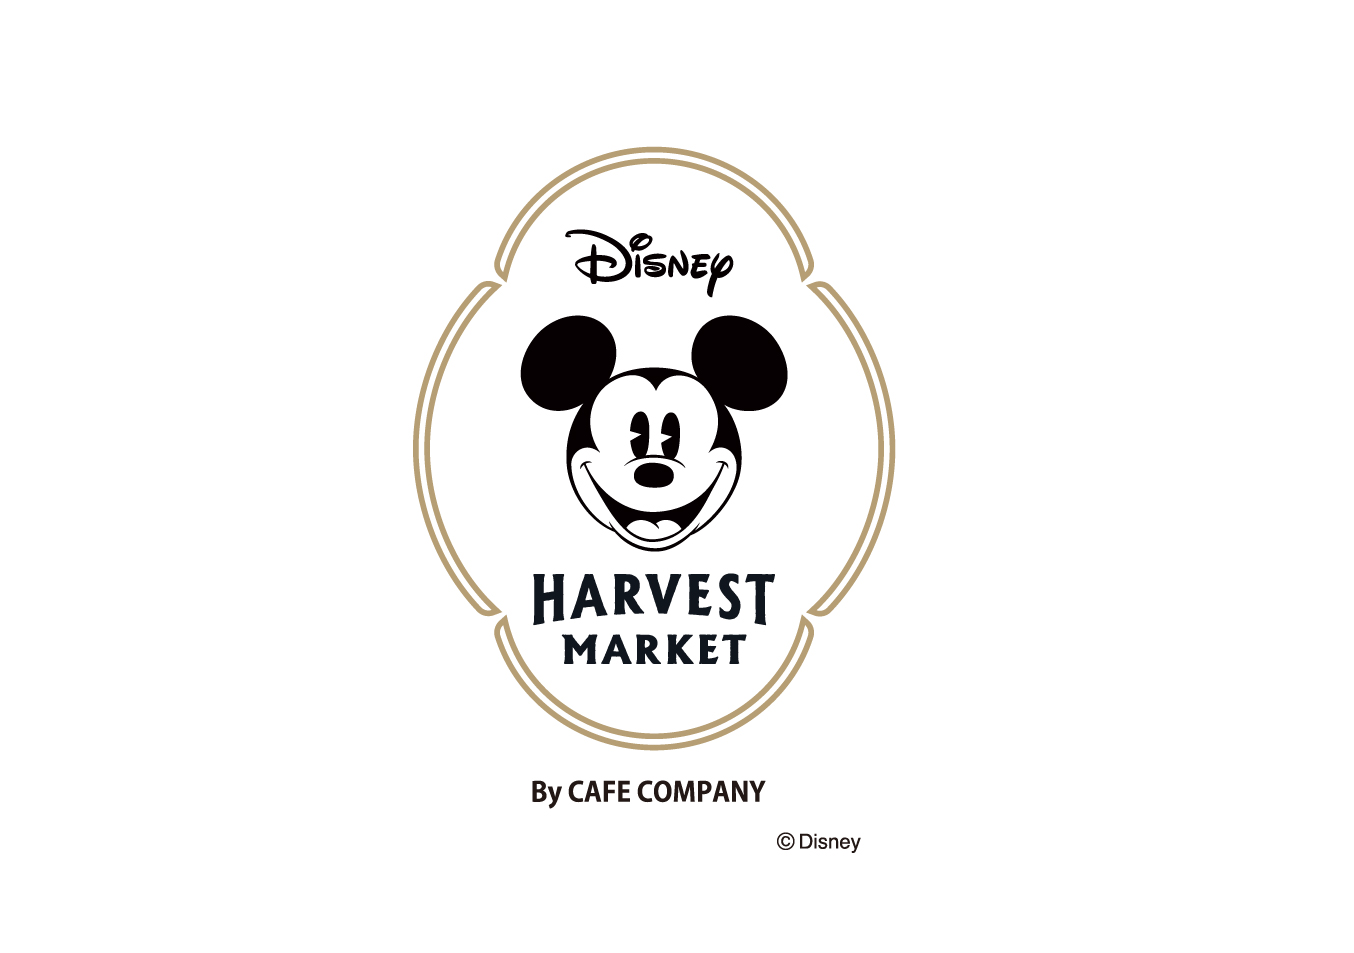 カフェ ギフトショップ Disney Harvest Market By Cafe Company が22年12月上旬 横浜赤レンガ倉庫 にオープン決定 カフェ カンパニー株式会社のプレスリリース